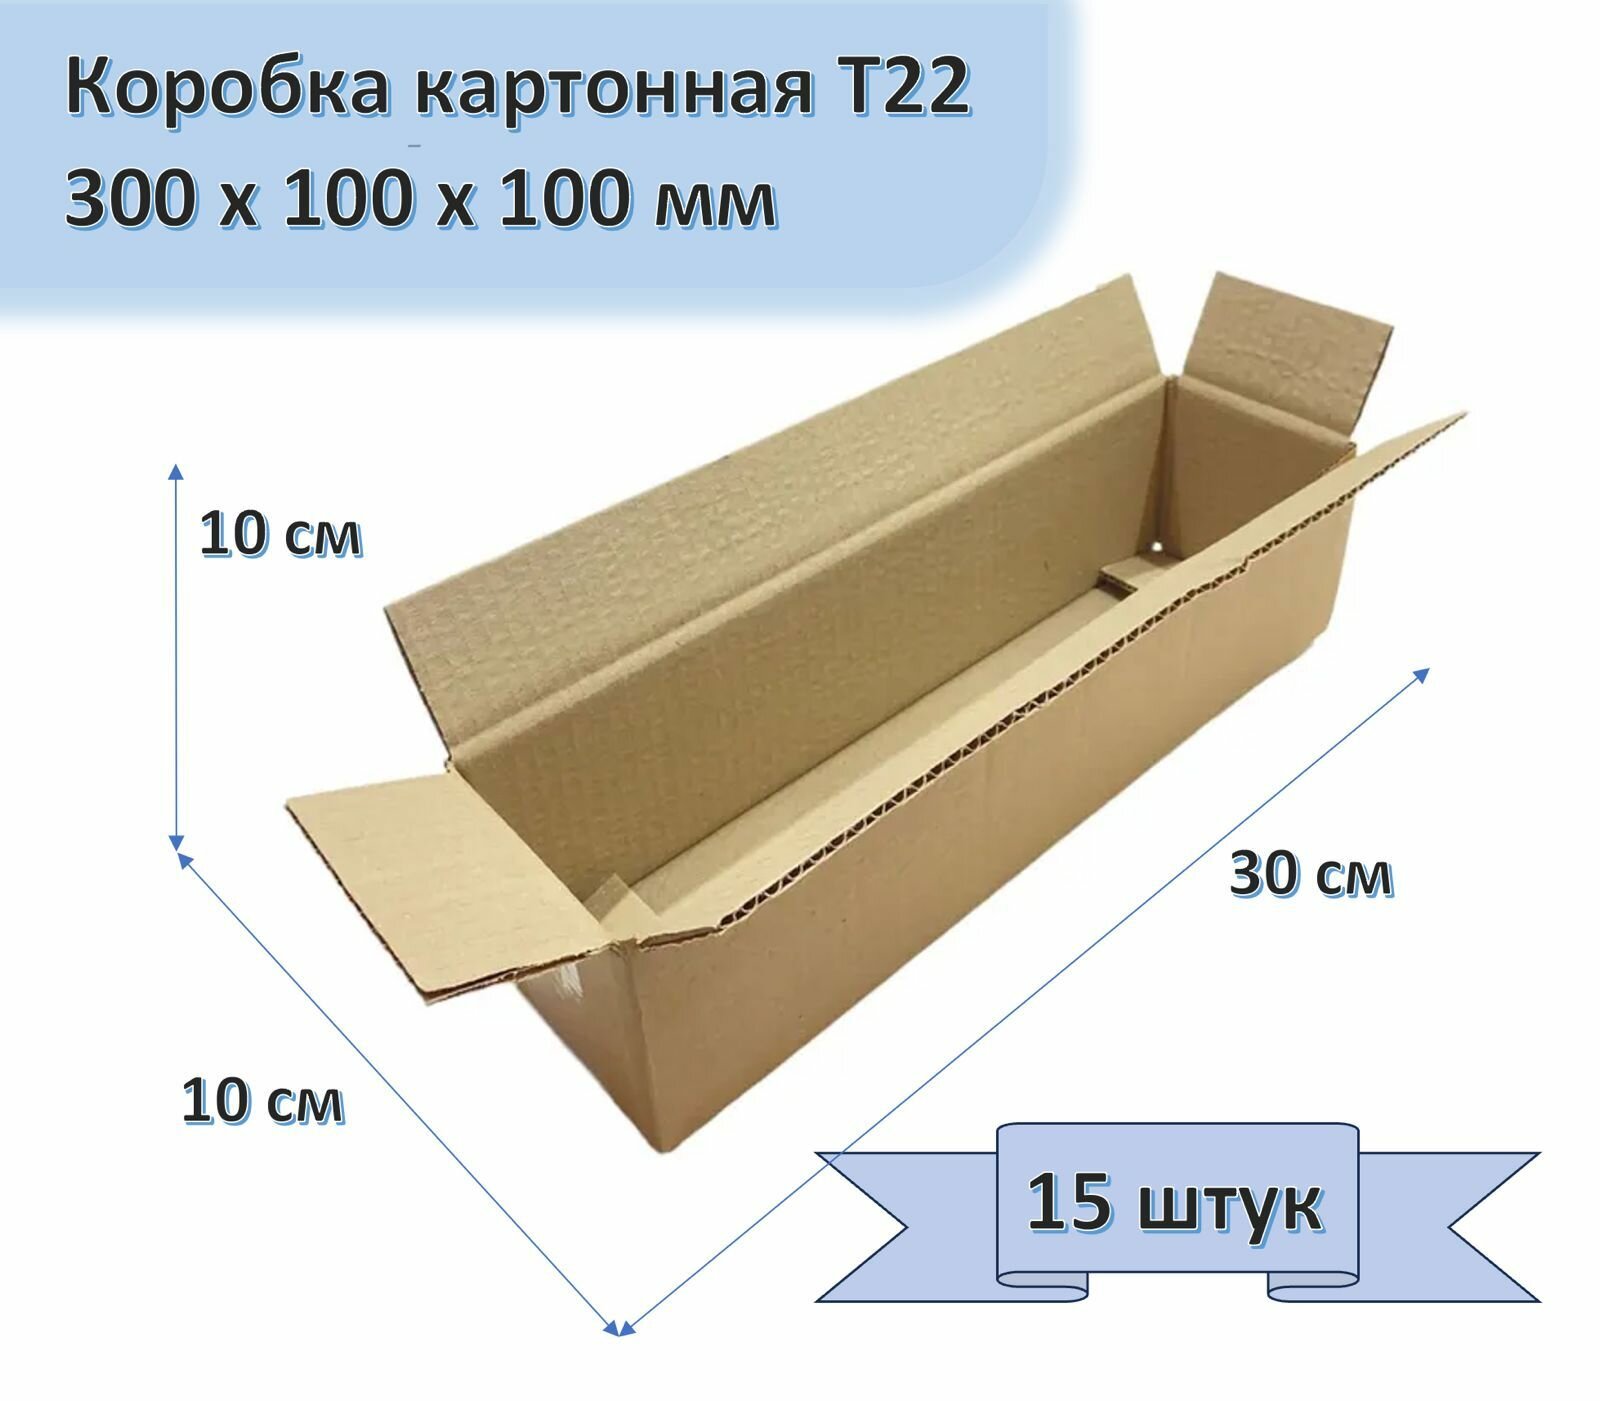 Коробка картонная 30х10х10 см, 15 штук в упаковке, Т22, 300х100х100 мм, гофрокороб для упаковки, хранения и посылок